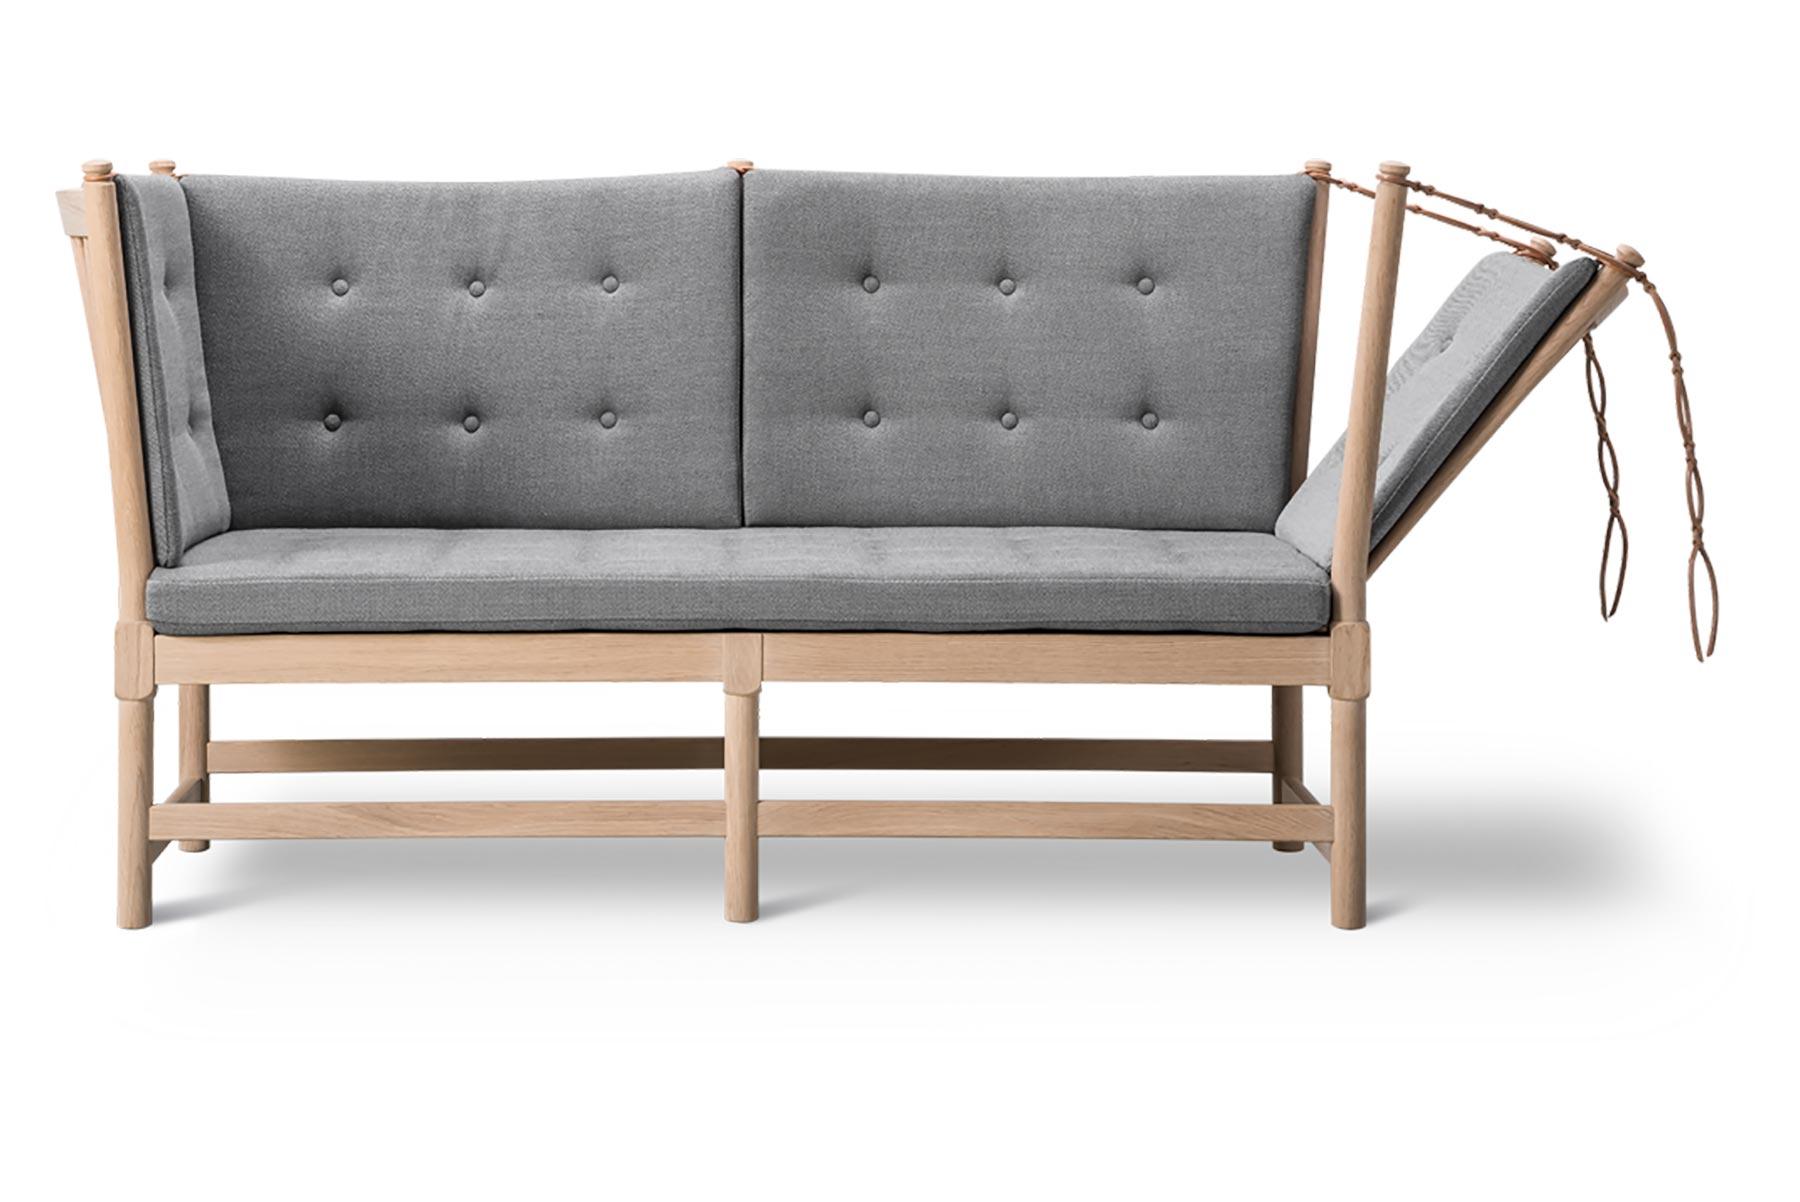 Mogensen a conçu le canapé à dossier en 1945 comme un hybride de lit de jour et de chaise longue, avec un côté articulé. La construction apparente était trop sophistiquée pour la culture modeste de l'après-guerre et le canapé n'est entré en